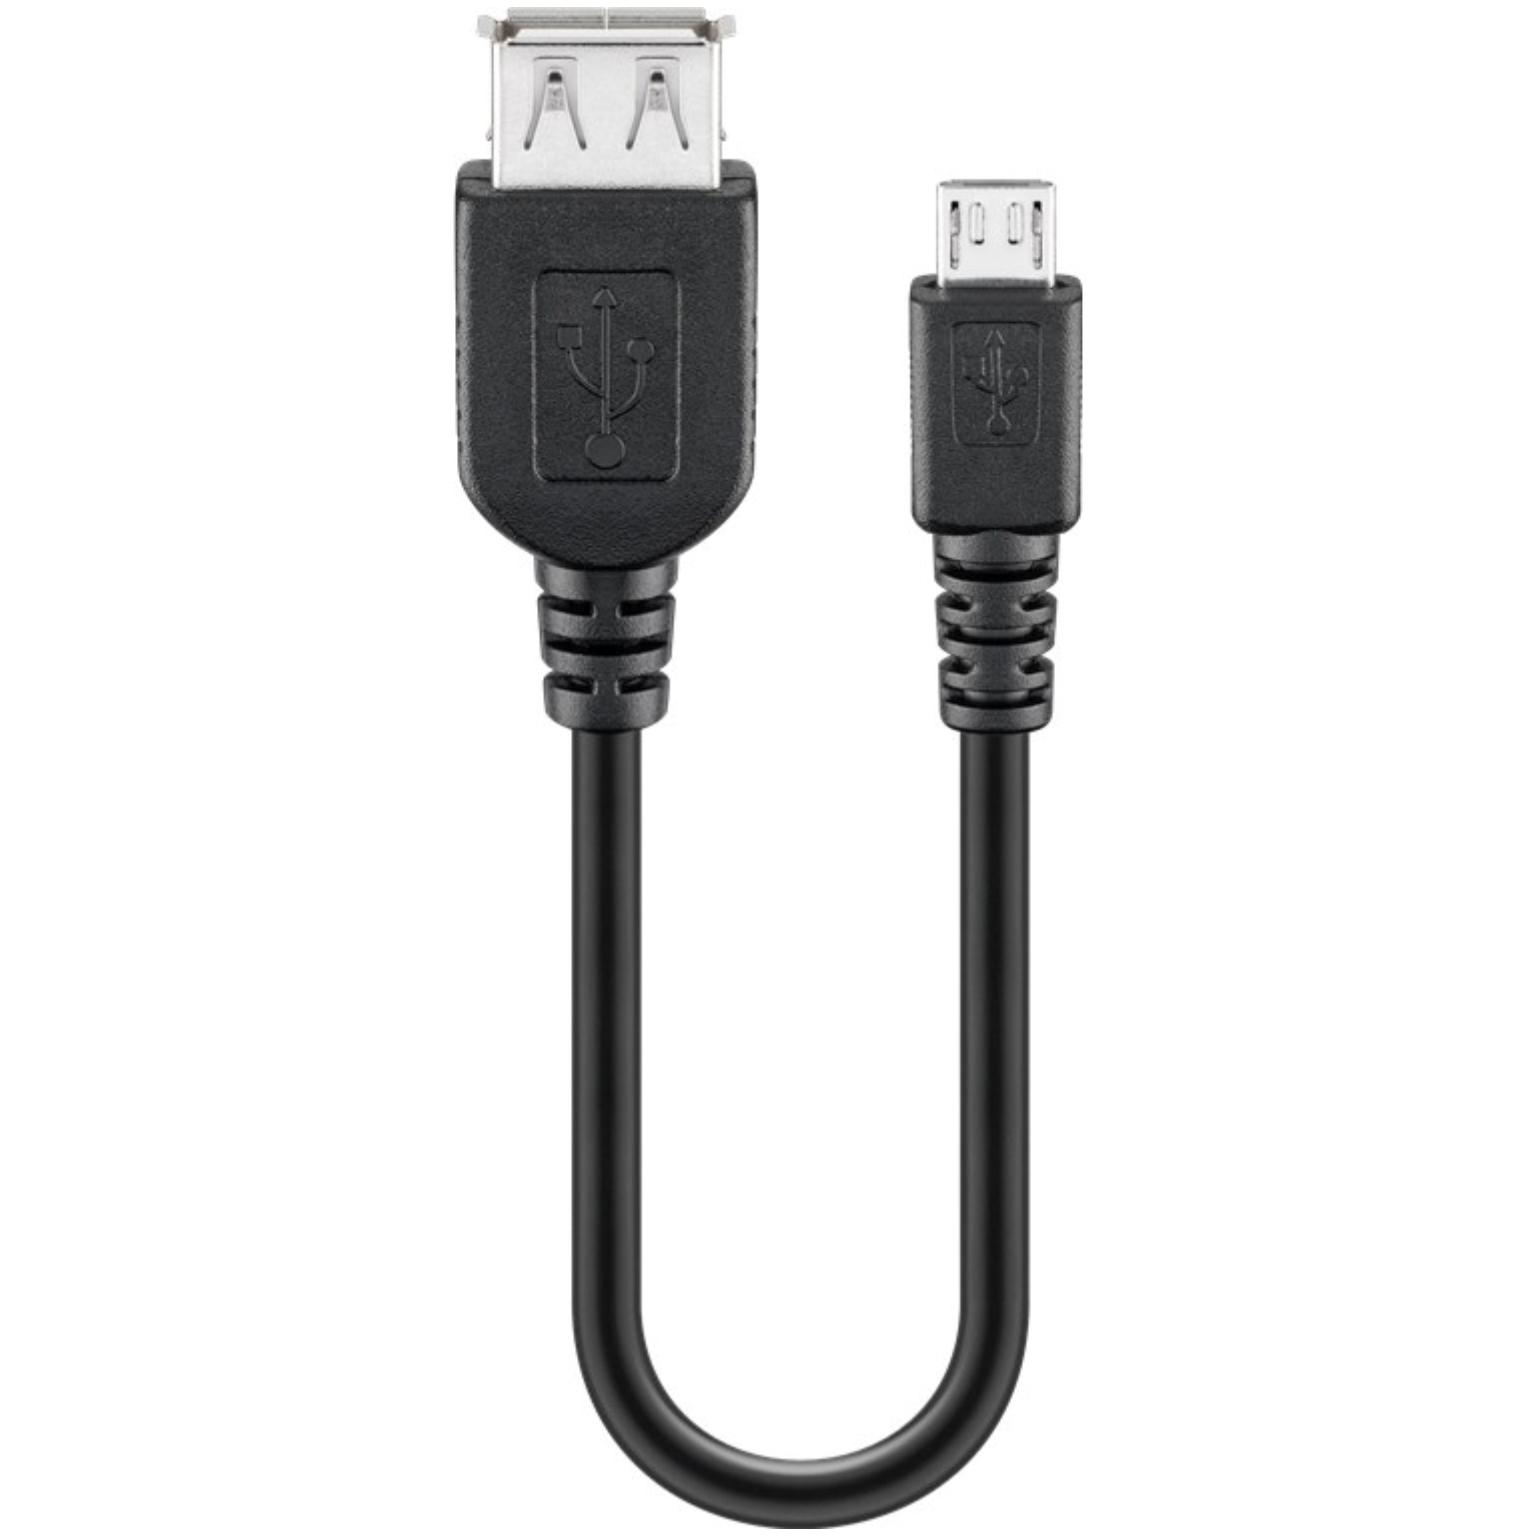 Buurt Technologie hiërarchie USB Micro Verloopstekker - Versie: 2.0 - HighSpeed, Aansluiting 1: Micro USB  male, Aansluiting 2: USB A female, Lengte: 0.2 meter.